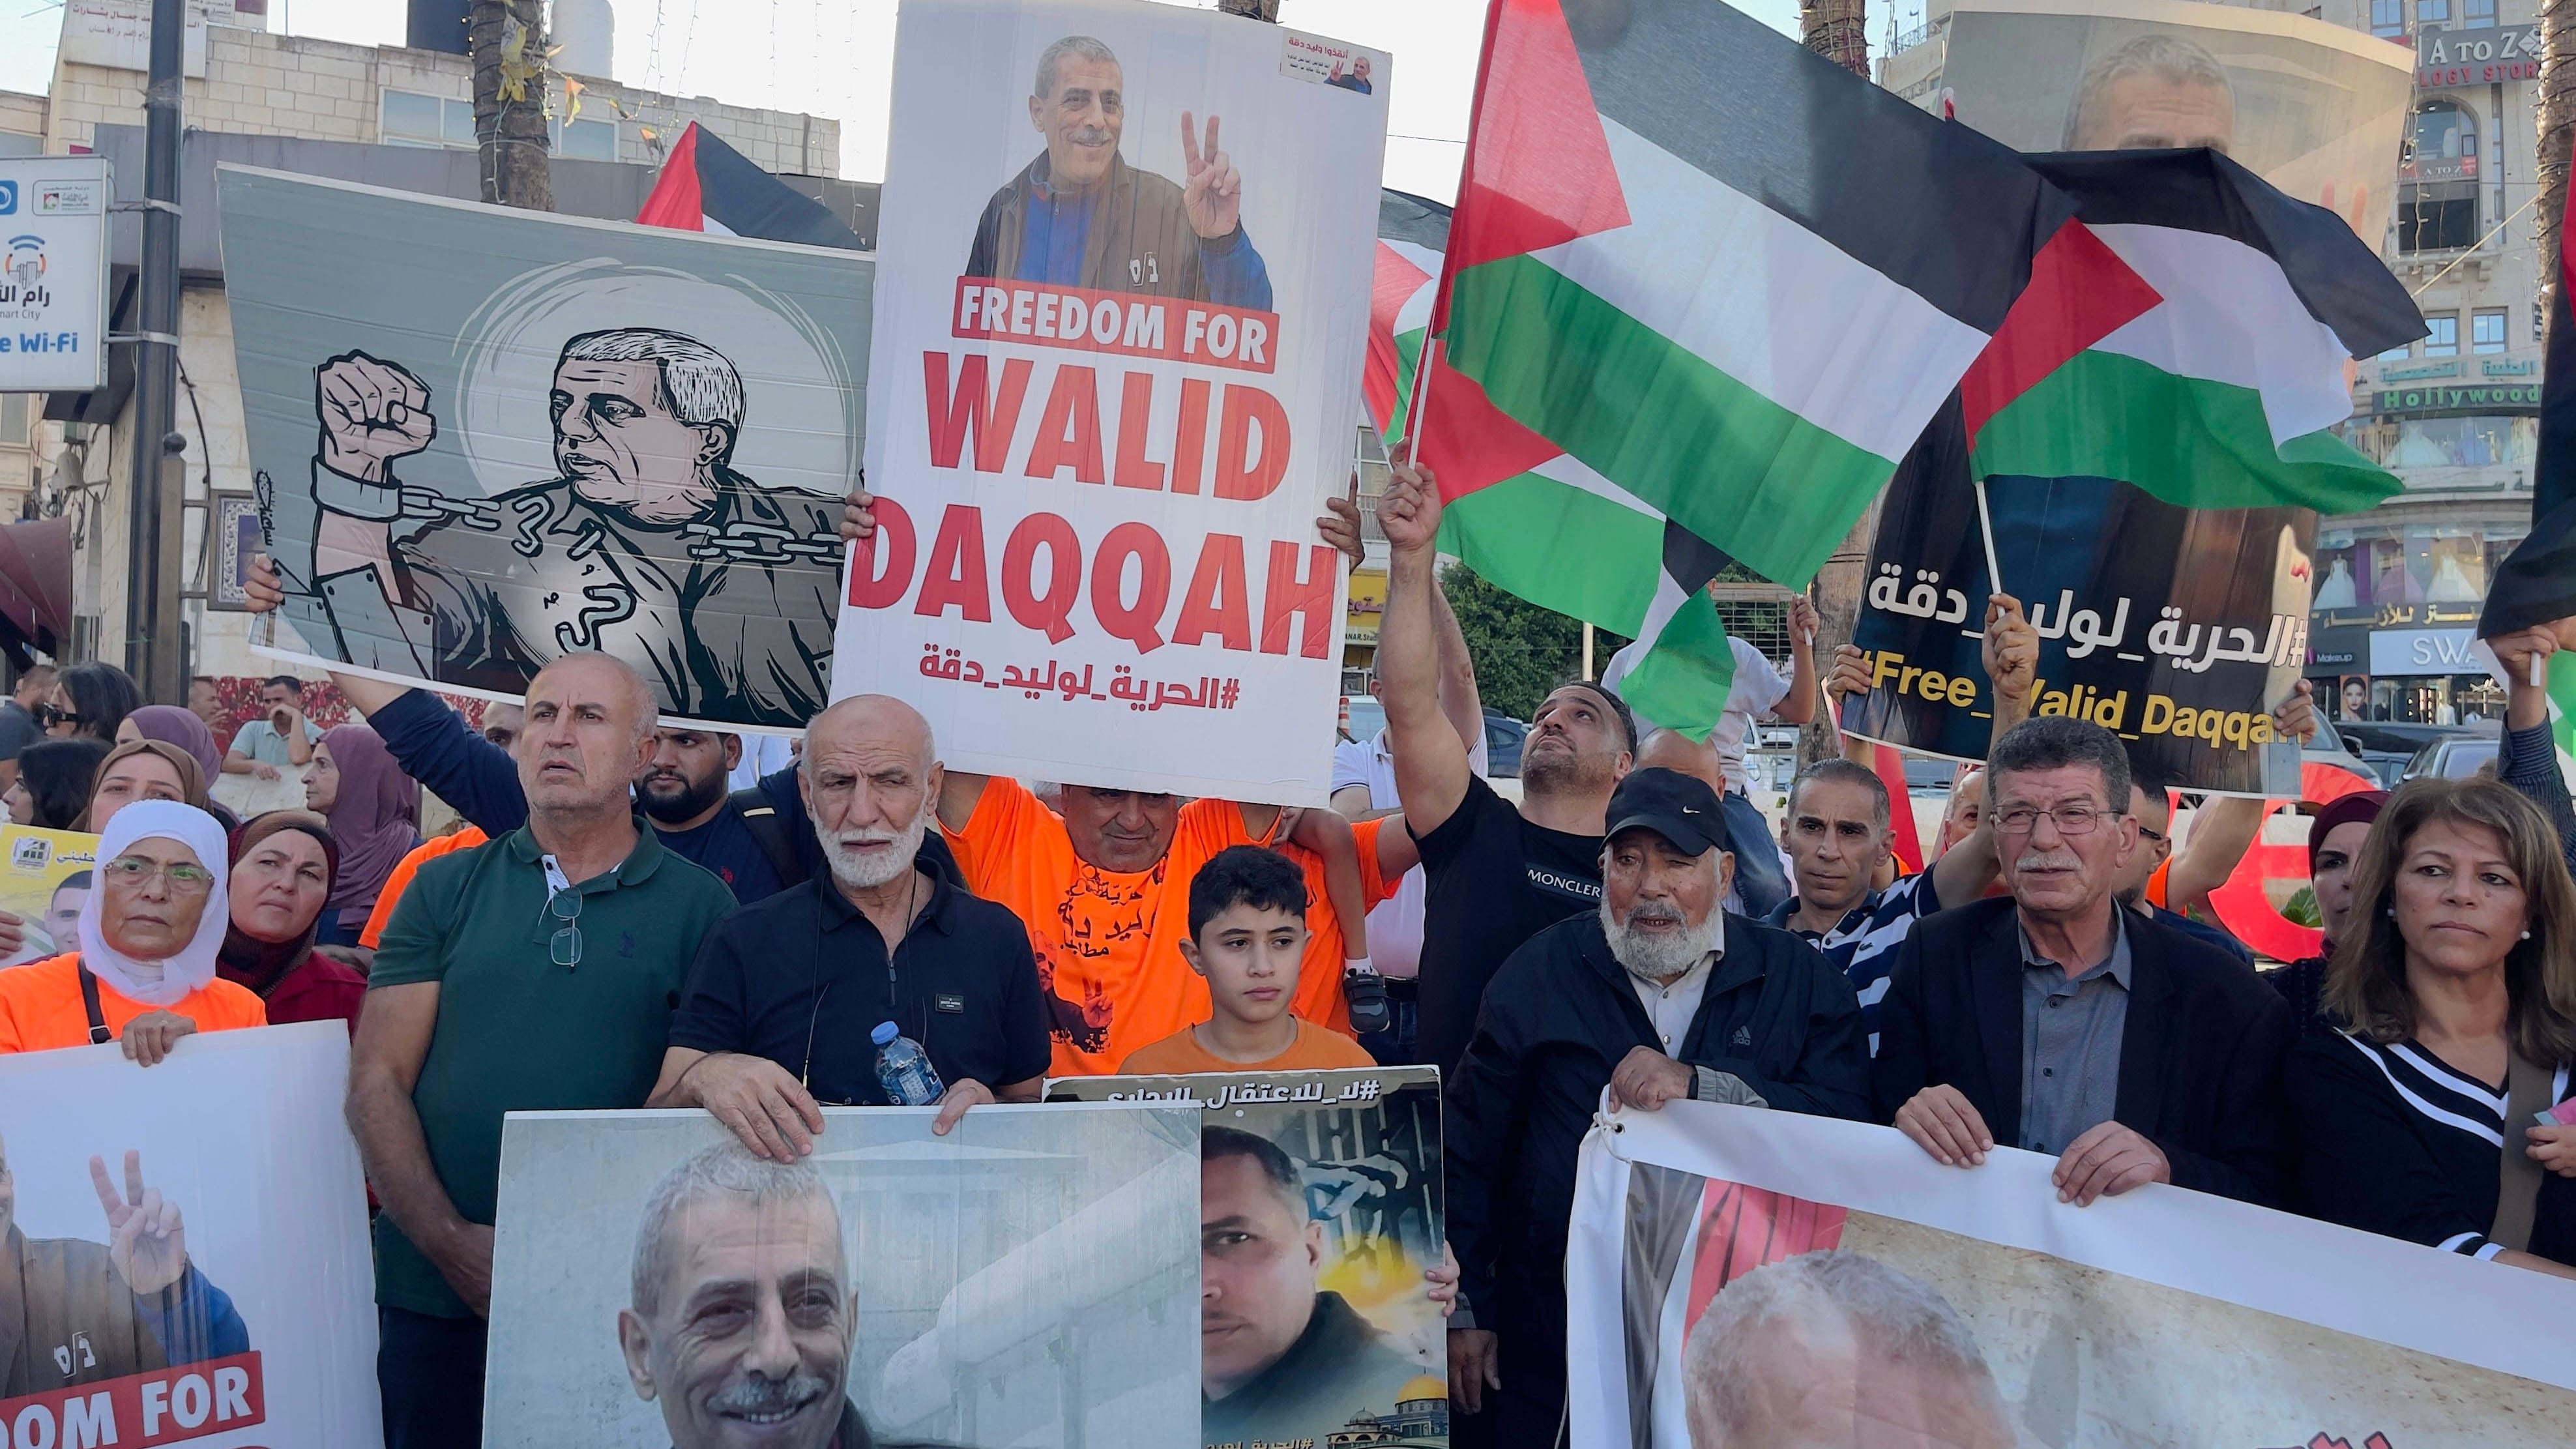 Israel: Walid Daqqah stirbt in Haft – Streit mit Amnesty